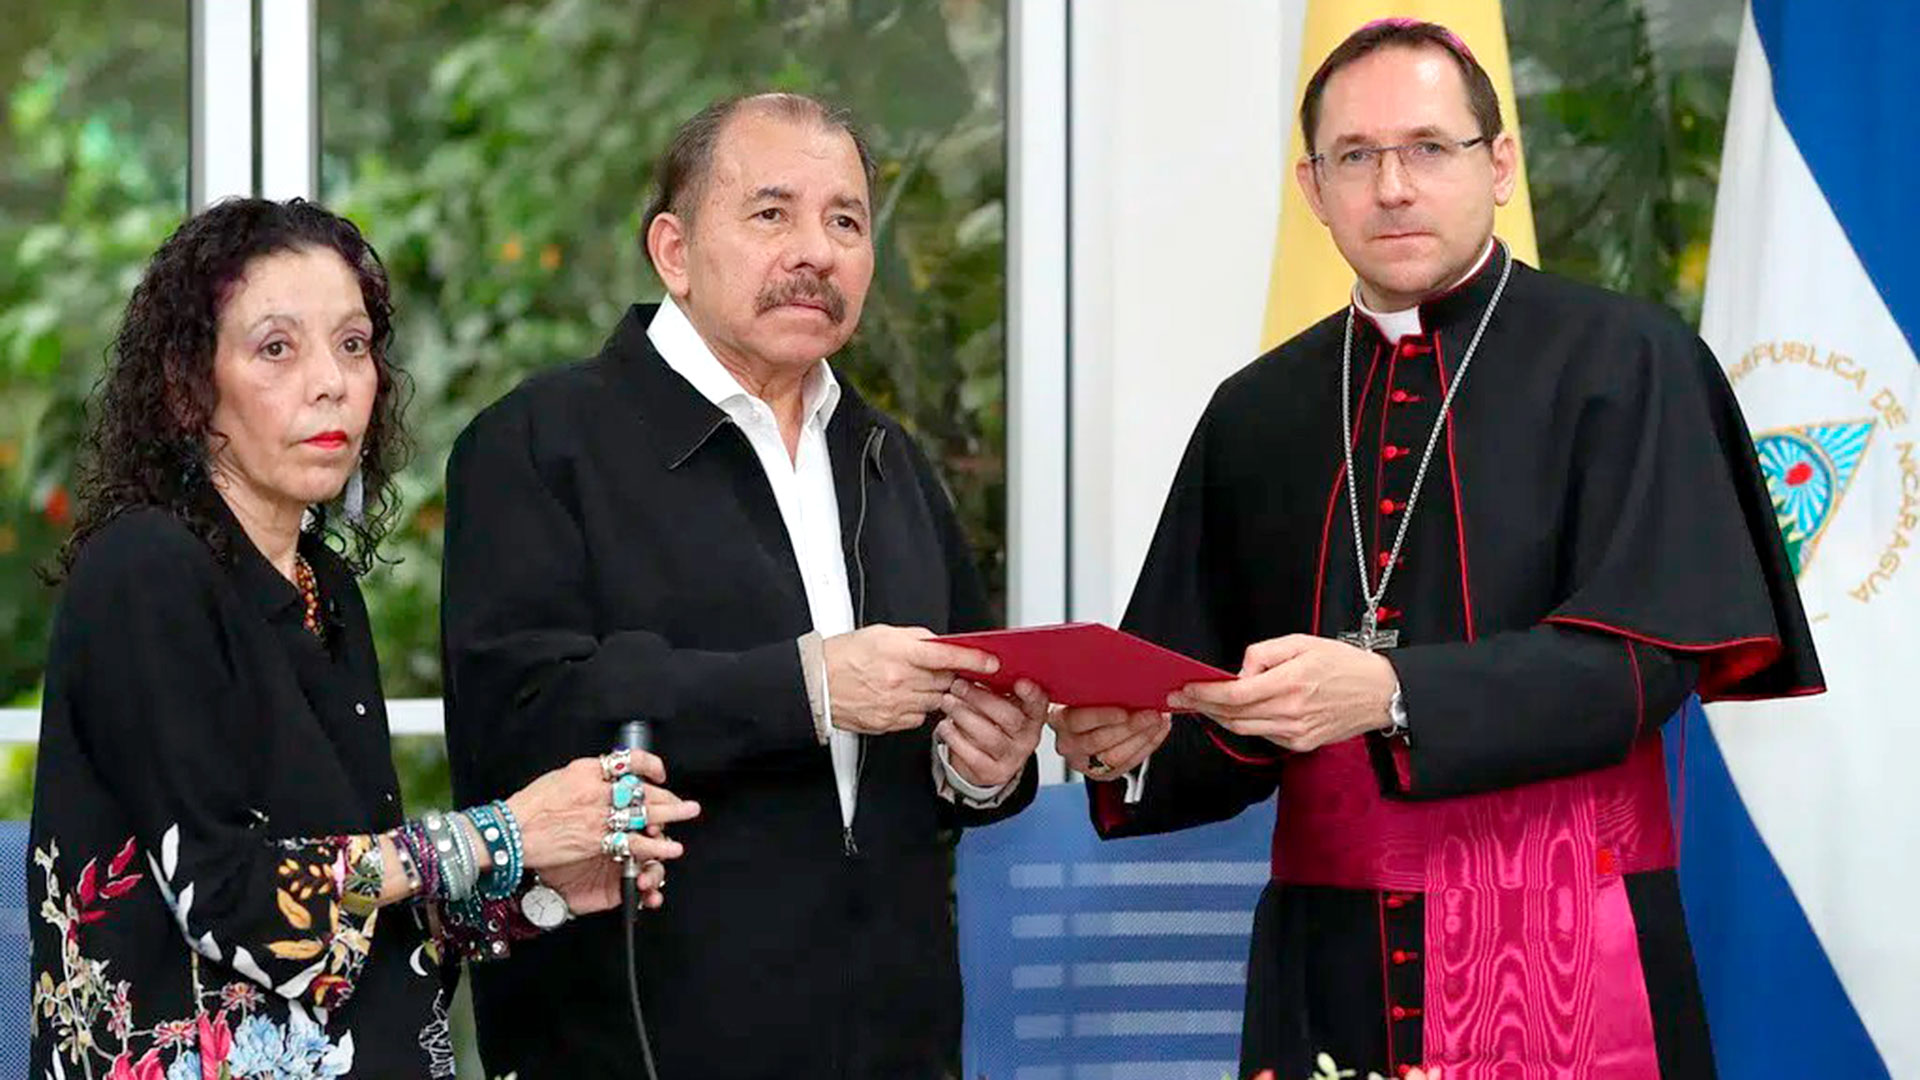 El pasado 6 de marzo, el régimen de Daniel Ortega y Rosario Murillo expulsó del país al nuncio Waldemar Stanislaw Sommertag, a quien vemos en la fotografia cuando presentó sus credenciales en junio de 2018. (Foto 19 Digital)